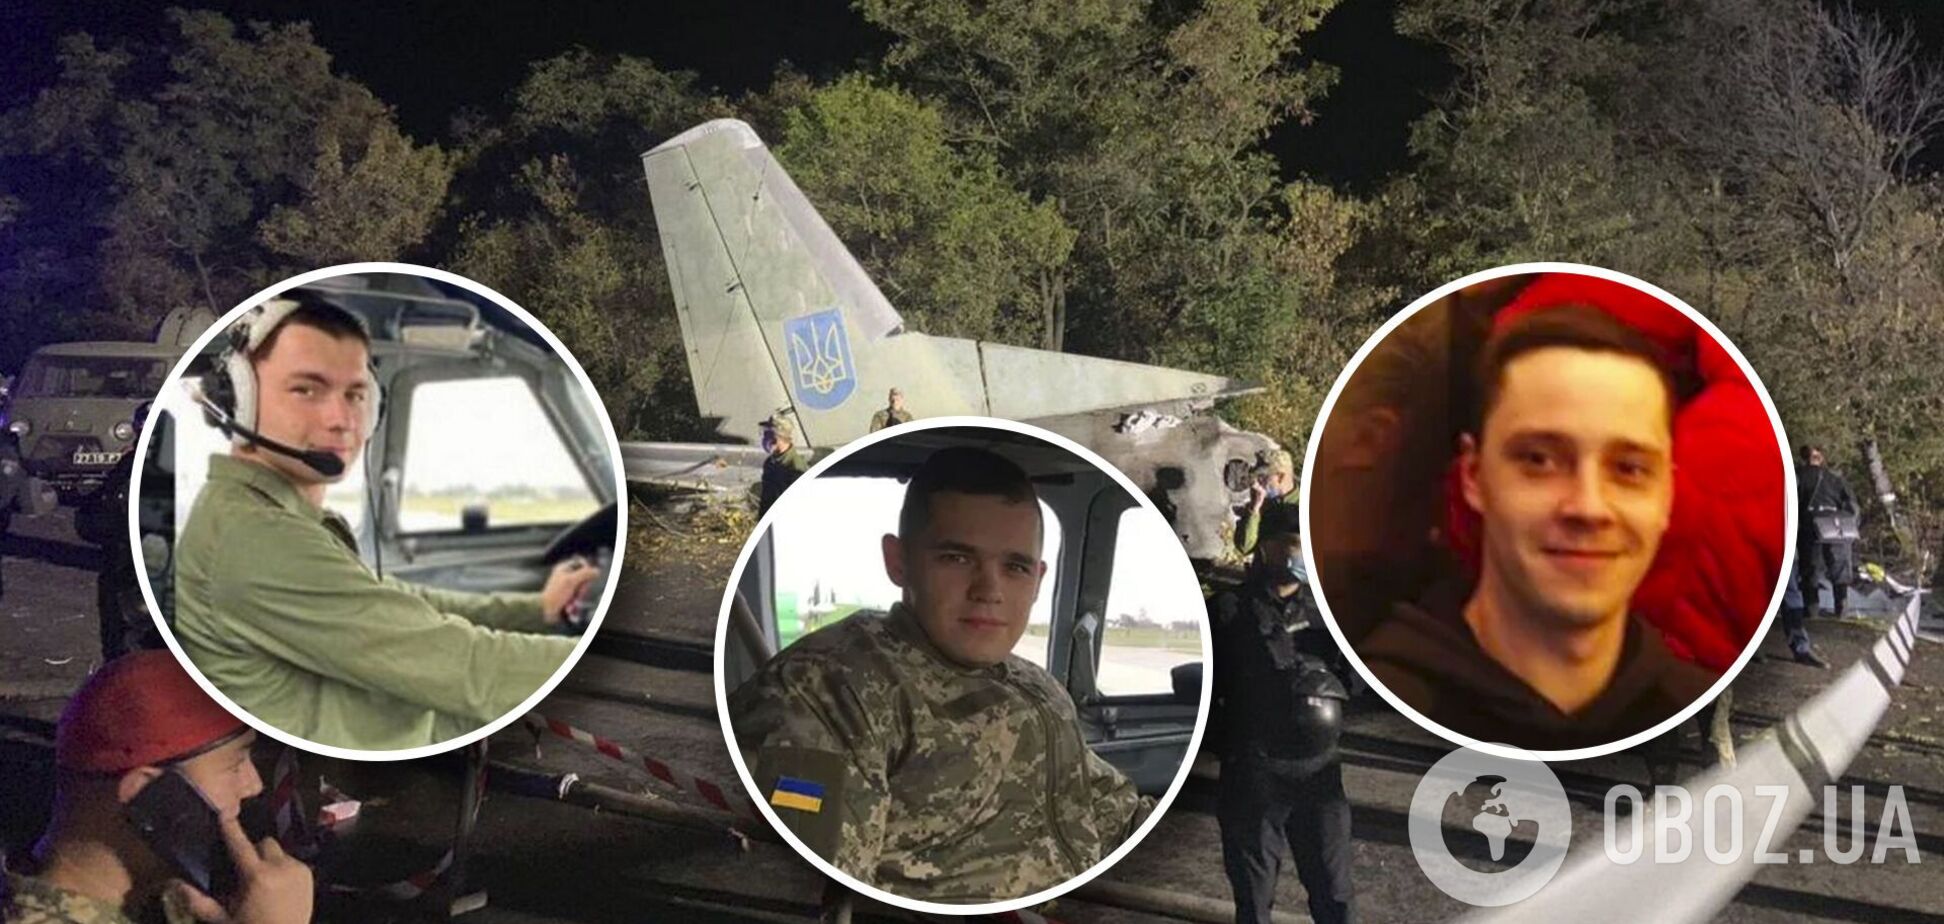 'Погиб цвет нации!' Истории молодых парней из злосчастного Ан-26 под Чугуевом